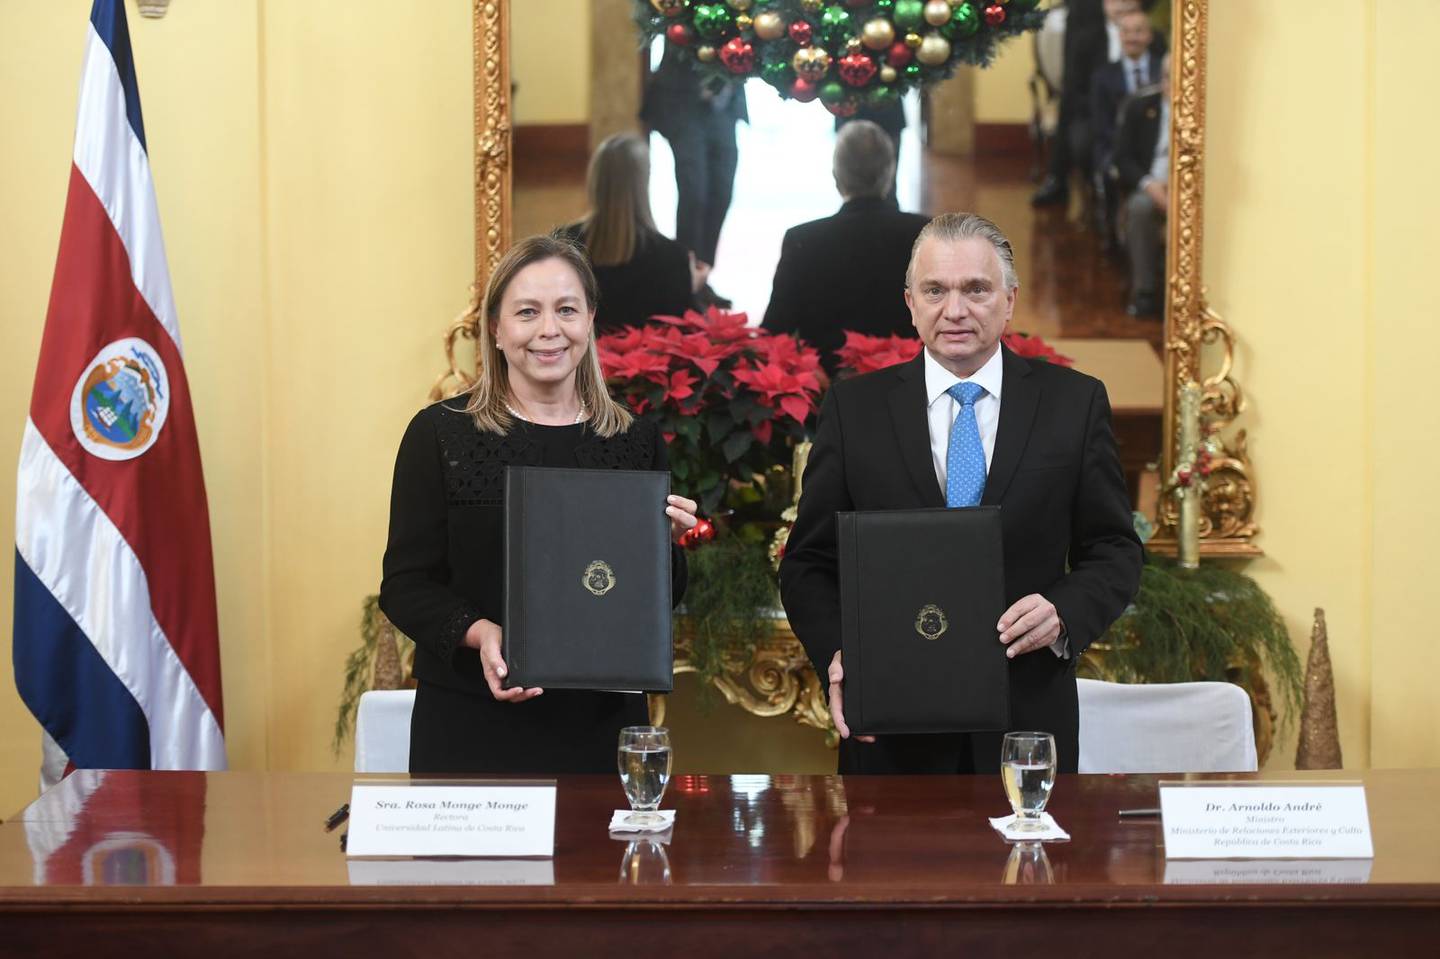 Con el objetivo de formar, capacitar y perfeccionar a los diplomáticos costarricenses, así como asesorarlos en asuntos especializados y estimular la investigación, el ministerio de Relaciones Exteriores y la Escuela de Relaciones Internacionales de la Universidad Latina de Costa Rica firmaron un convenio de cooperación